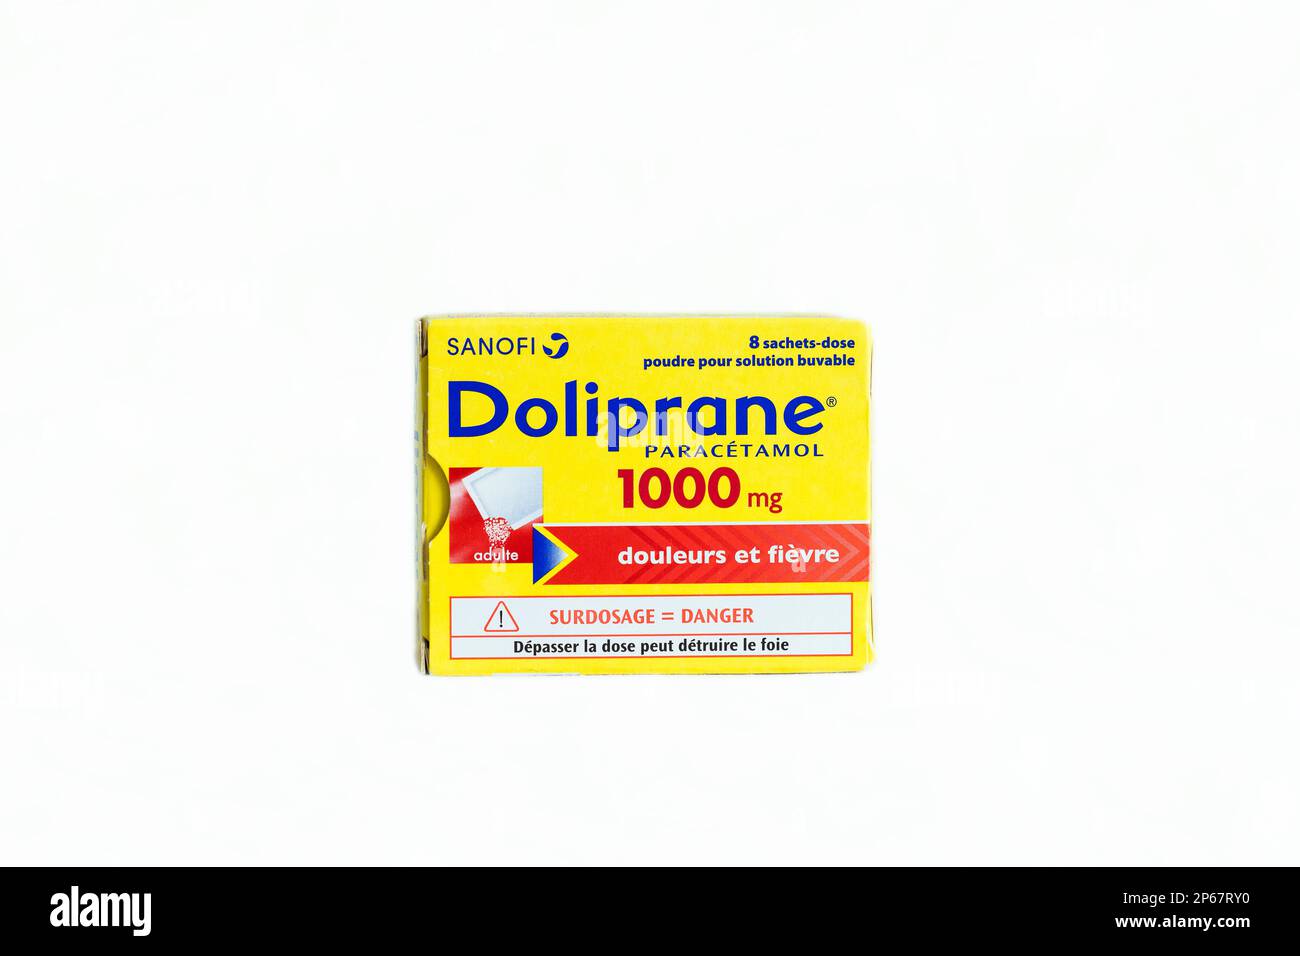 Doliprane 1000 mg de Sanofi, Paracetamol comprimés analgésique Banque D'Images